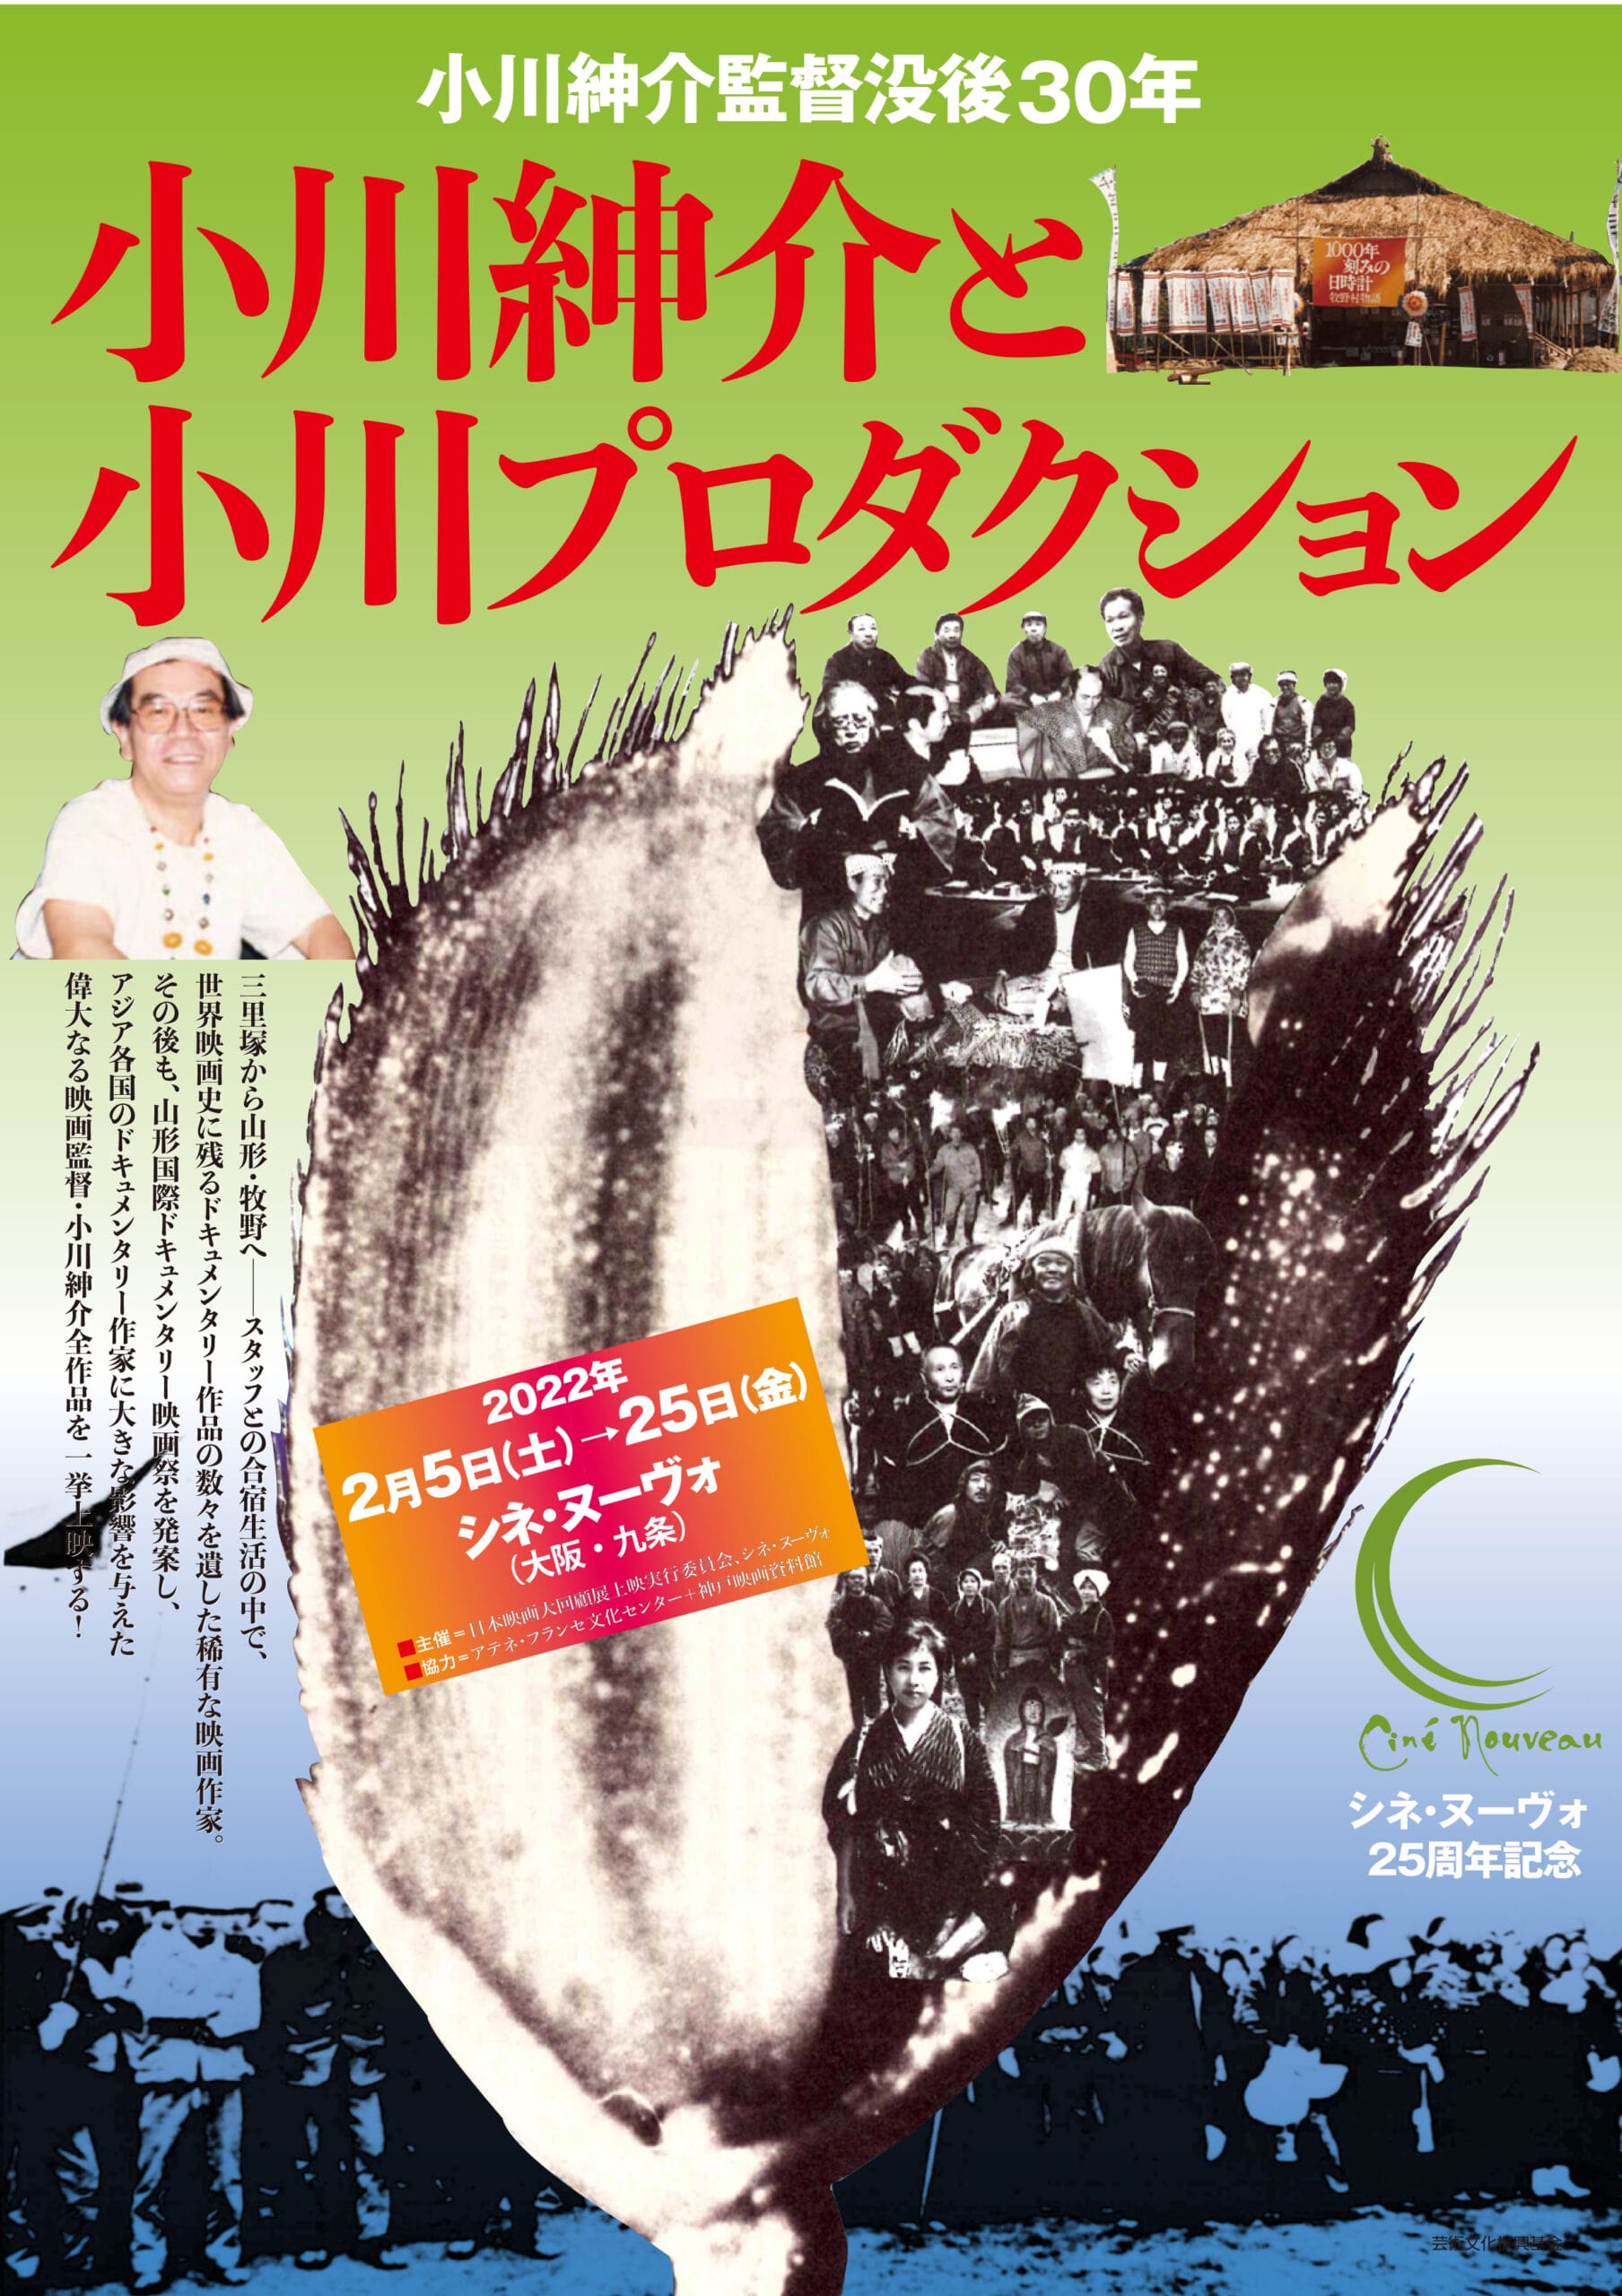 世界映画史に残る傑作ドキュメンタリーを手がけた小川紳介の全作品を